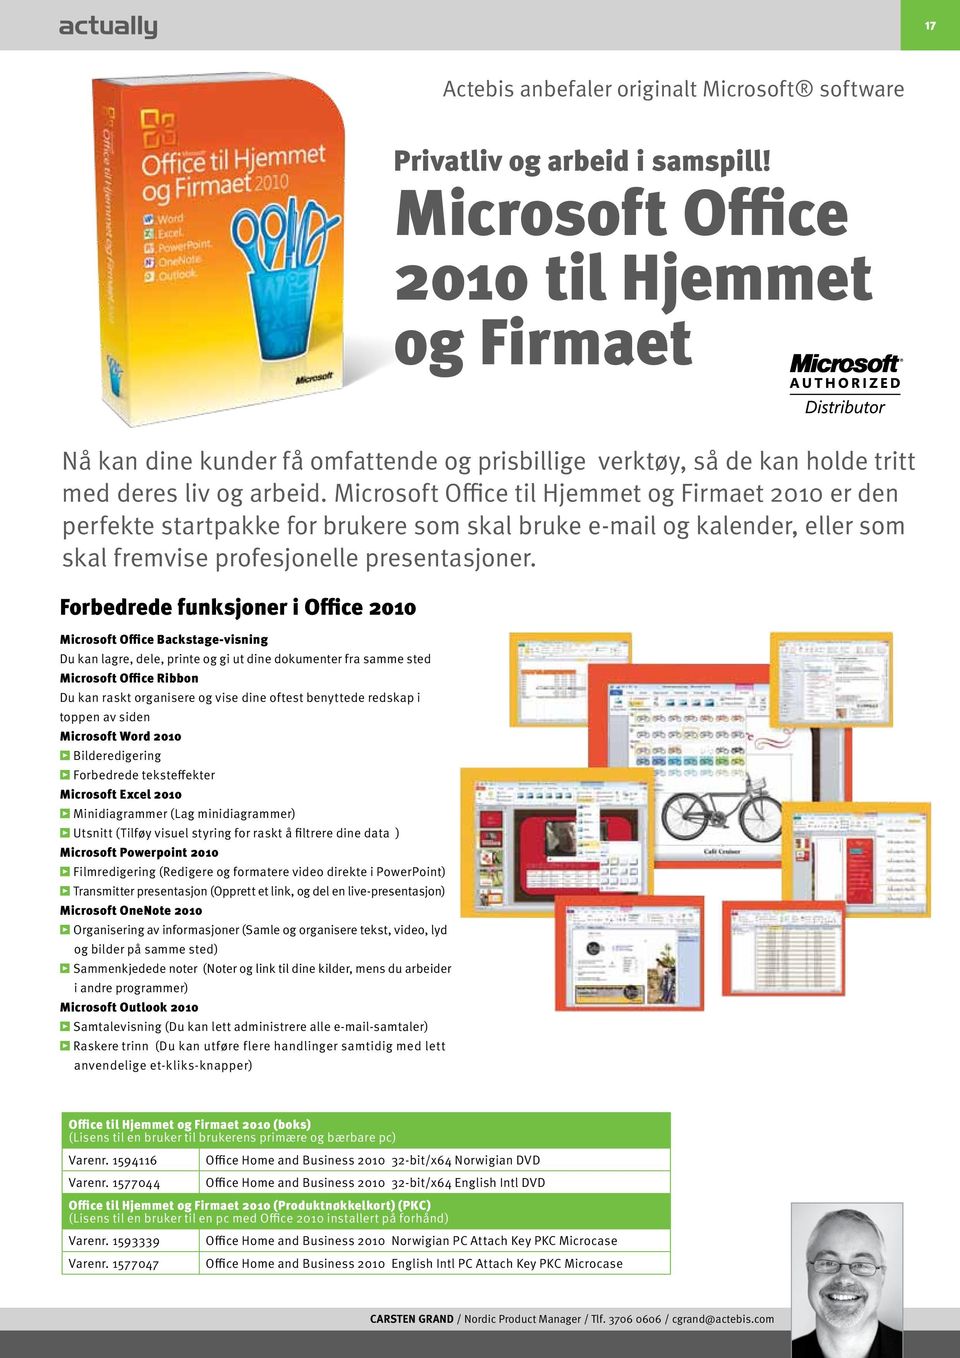 Microsoft Office til Hjemmet og Firmaet 2010 er den perfekte startpakke for brukere som skal bruke e-mail og kalender, eller som skal fremvise profesjonelle presentasjoner.